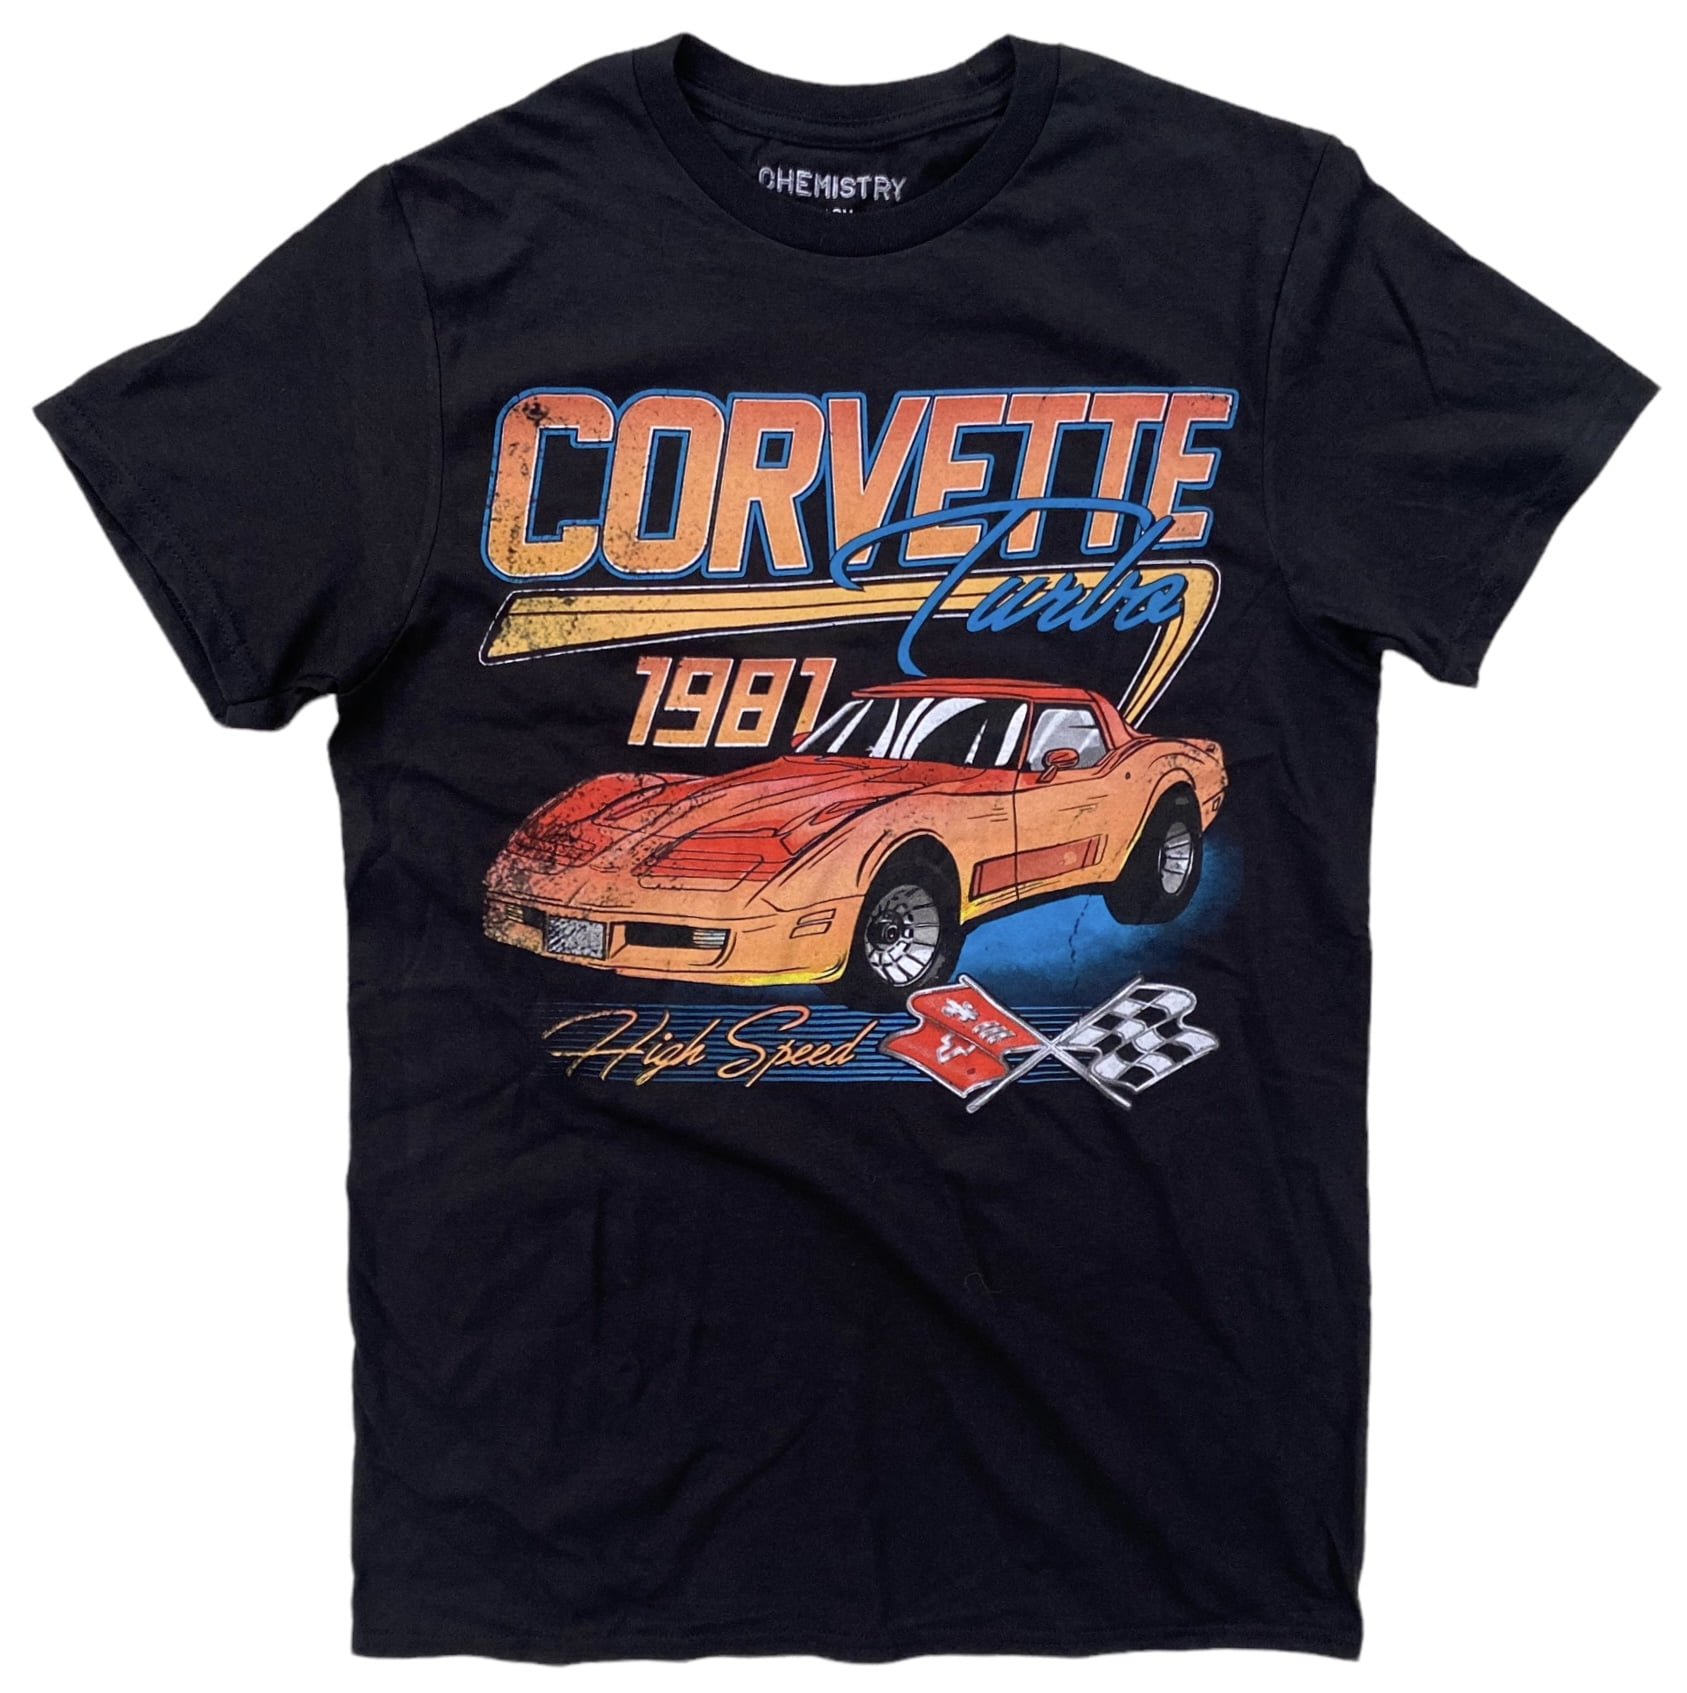 Corvette Chevrolet Turbo 1981 Men's Officially Licensed Vintage Retro ...